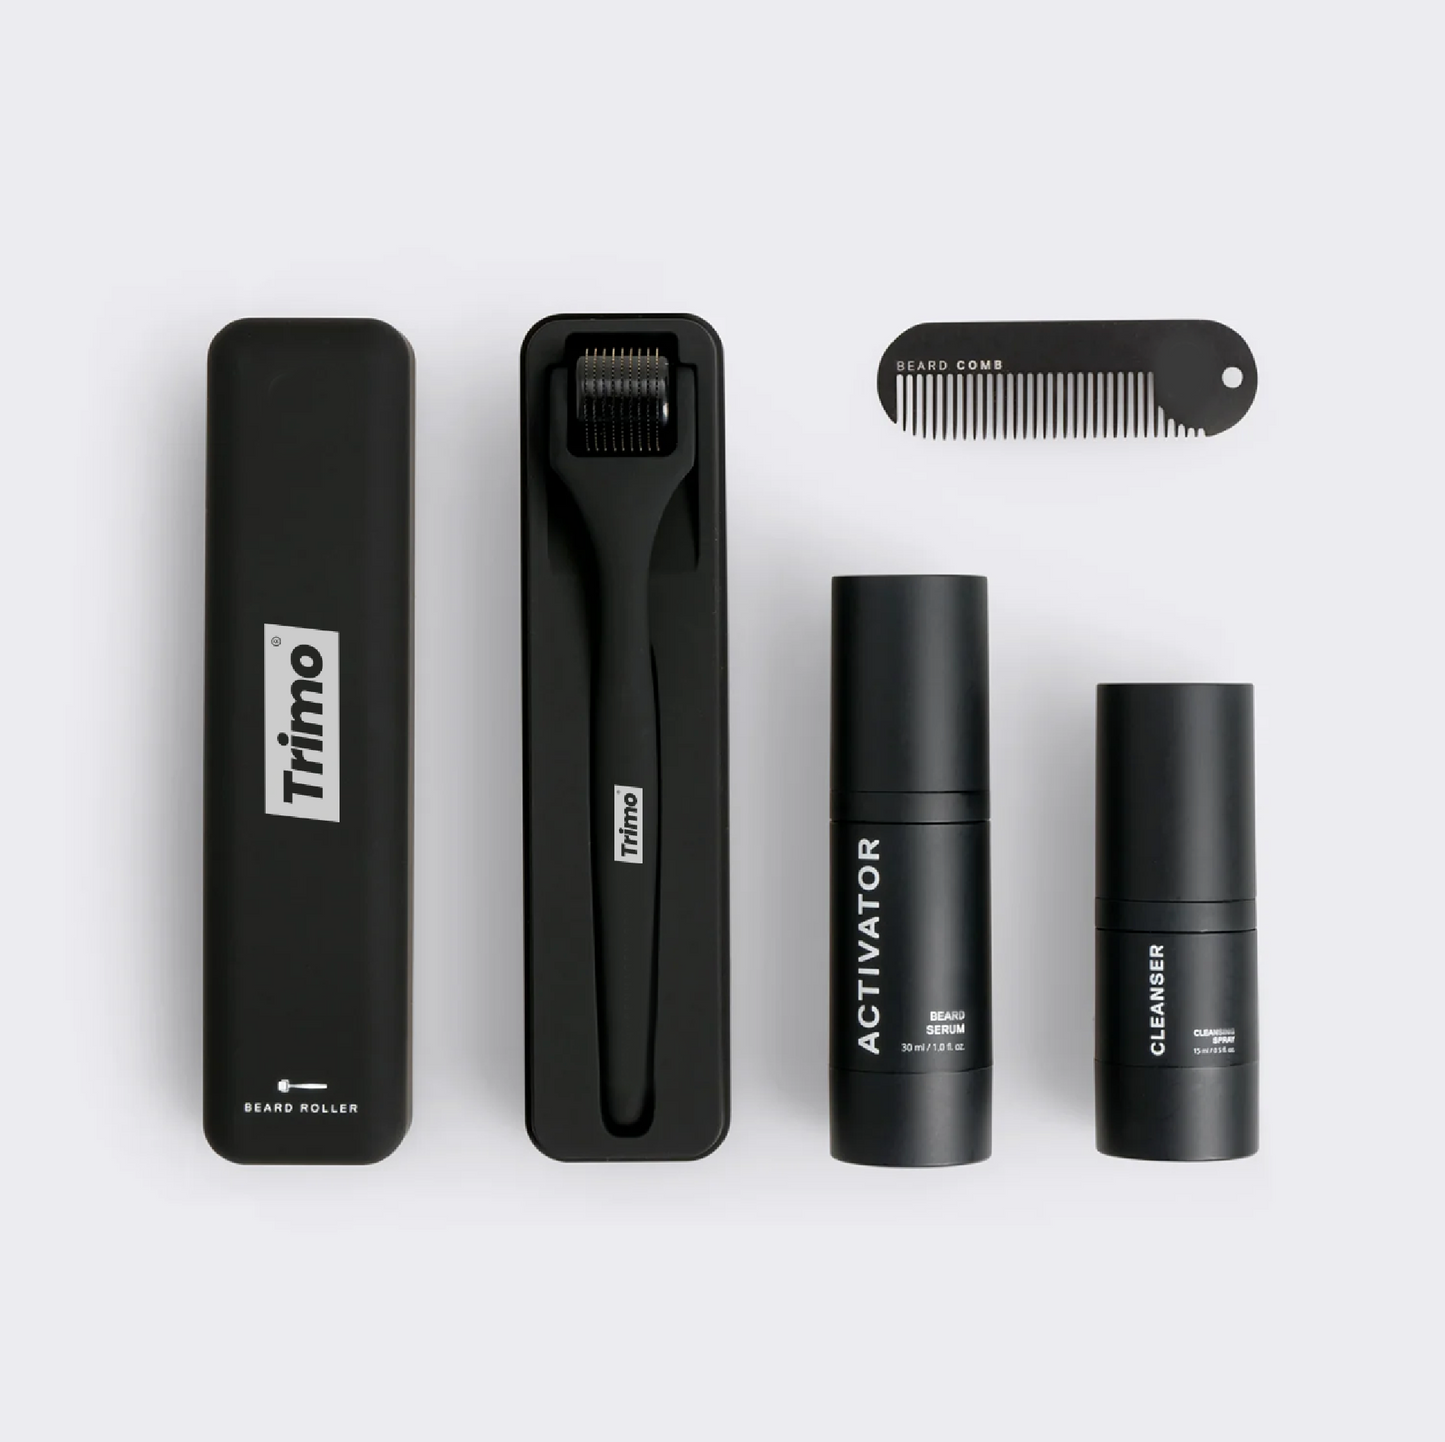 Beard-Care Kit | Trimo™